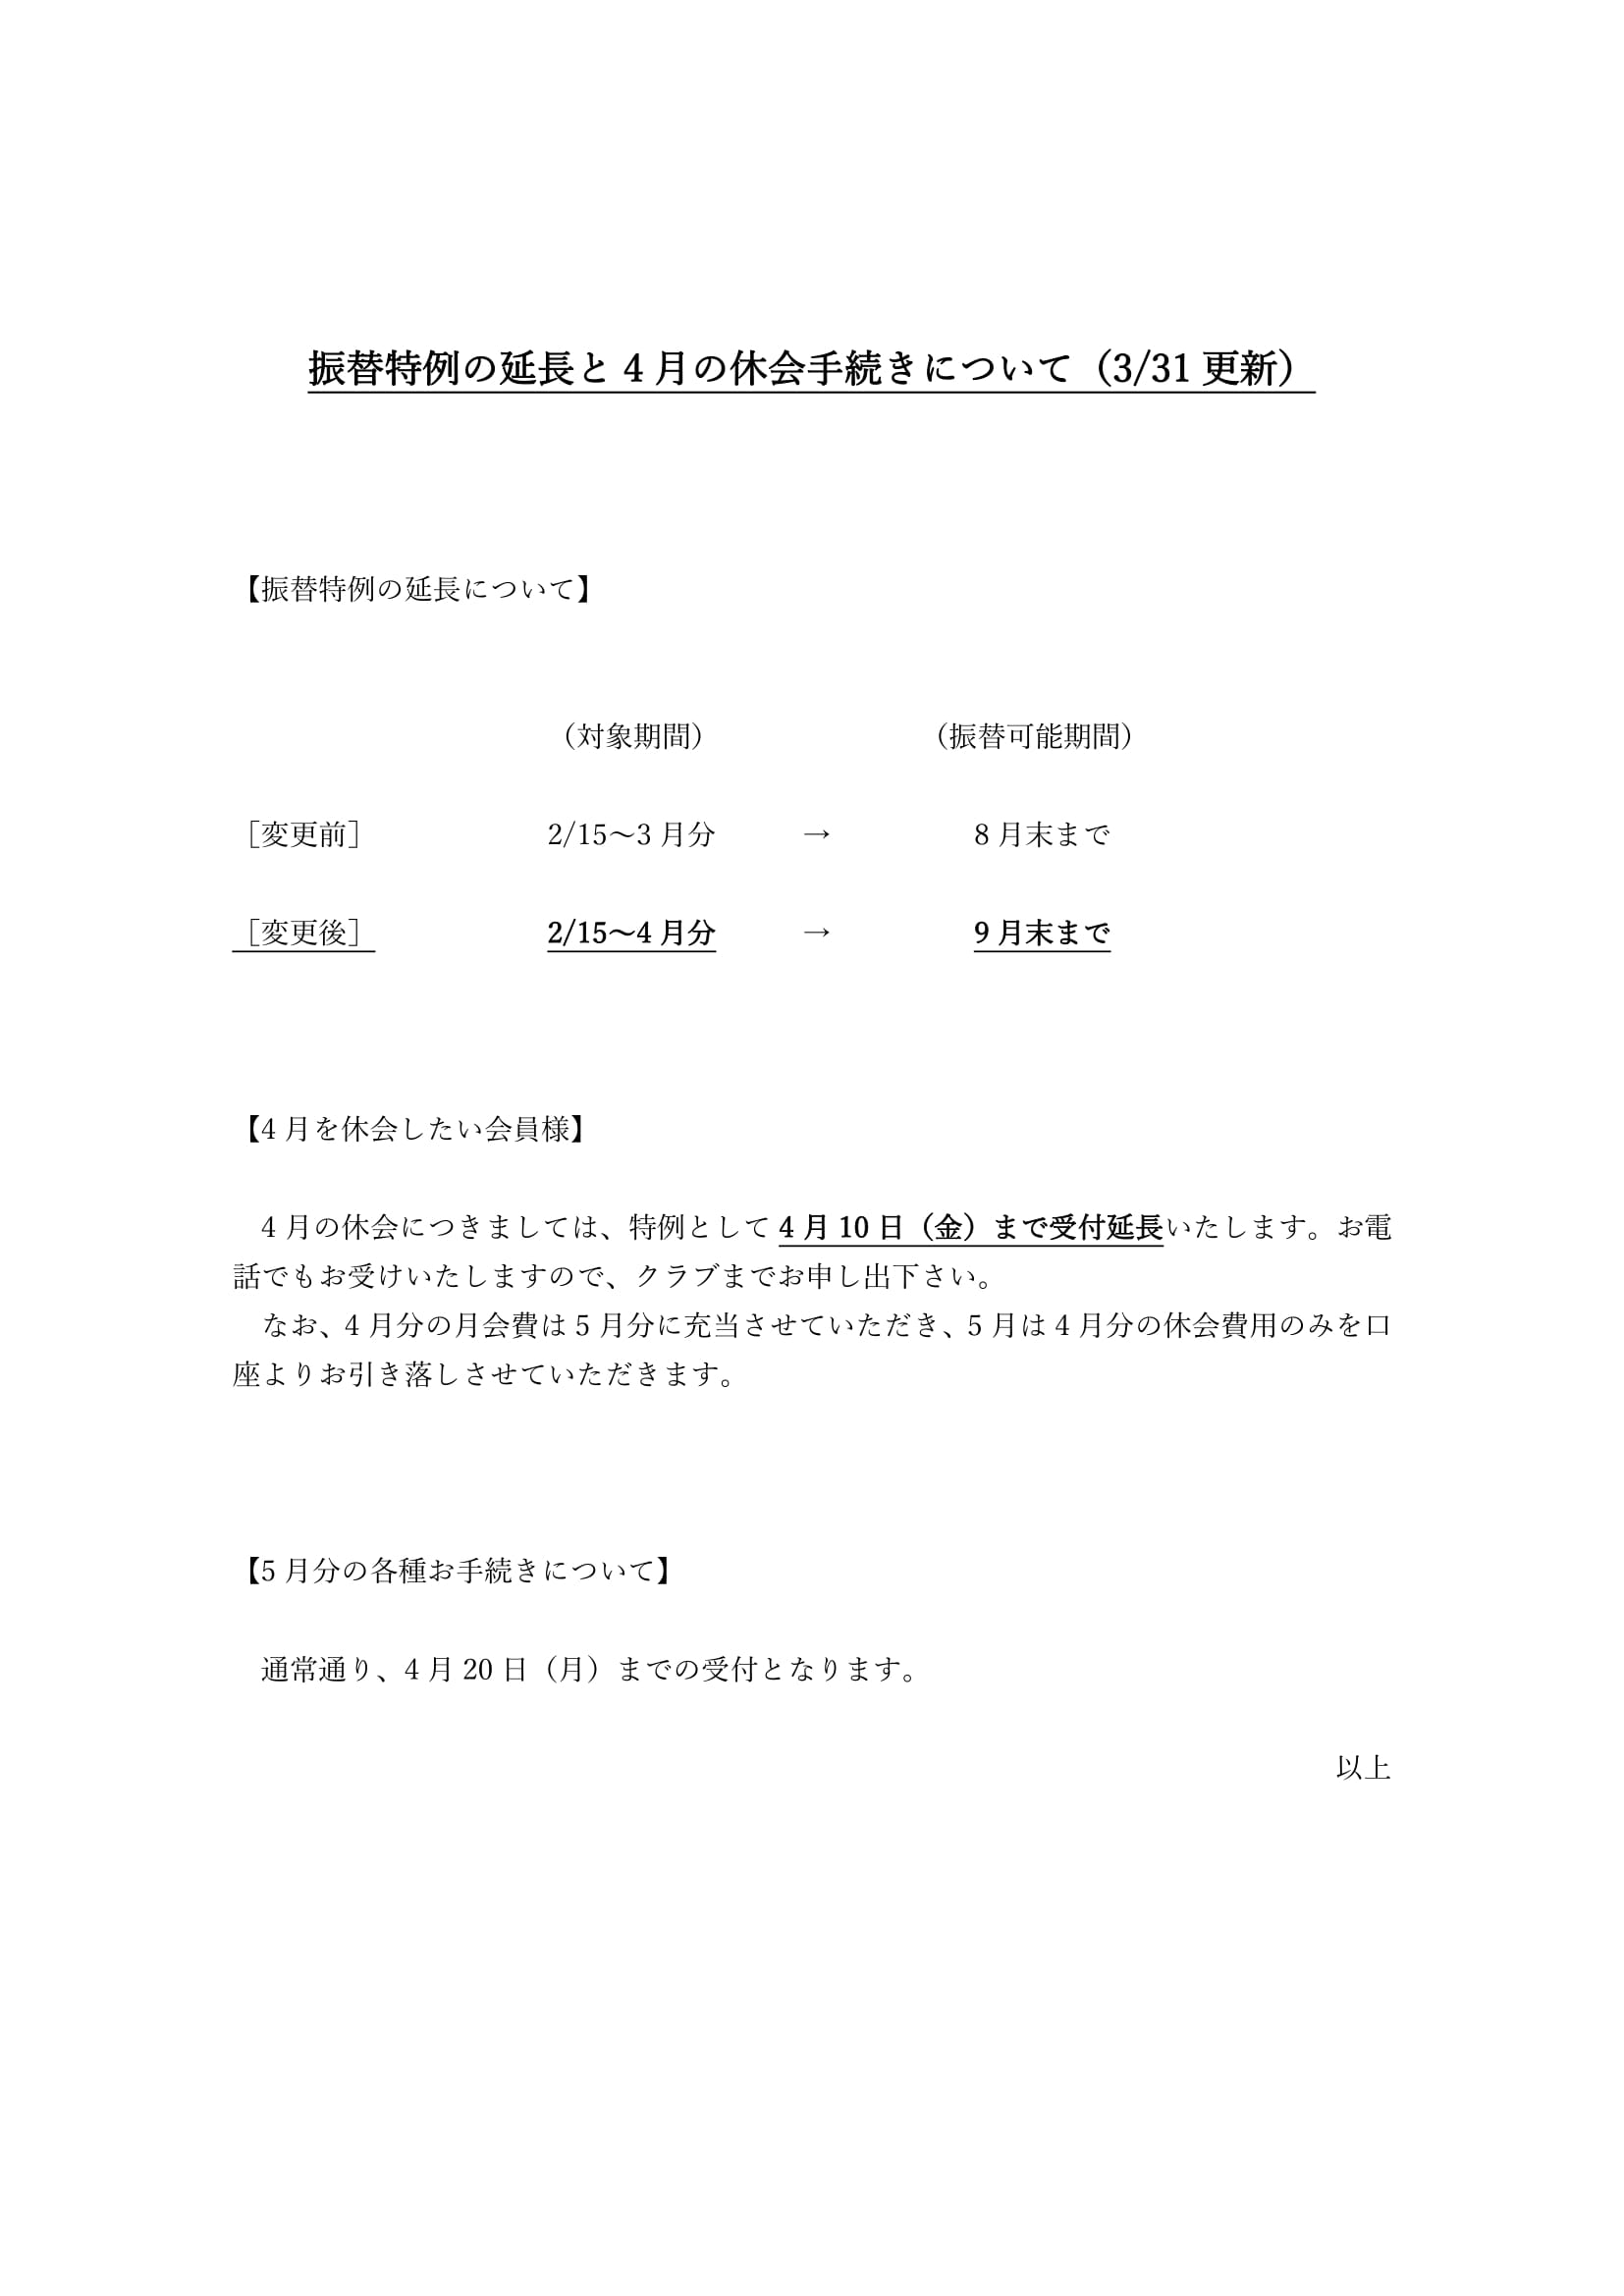 西新井･舎人 振替特例の延長と4月休会手続きについて(3/31更新)